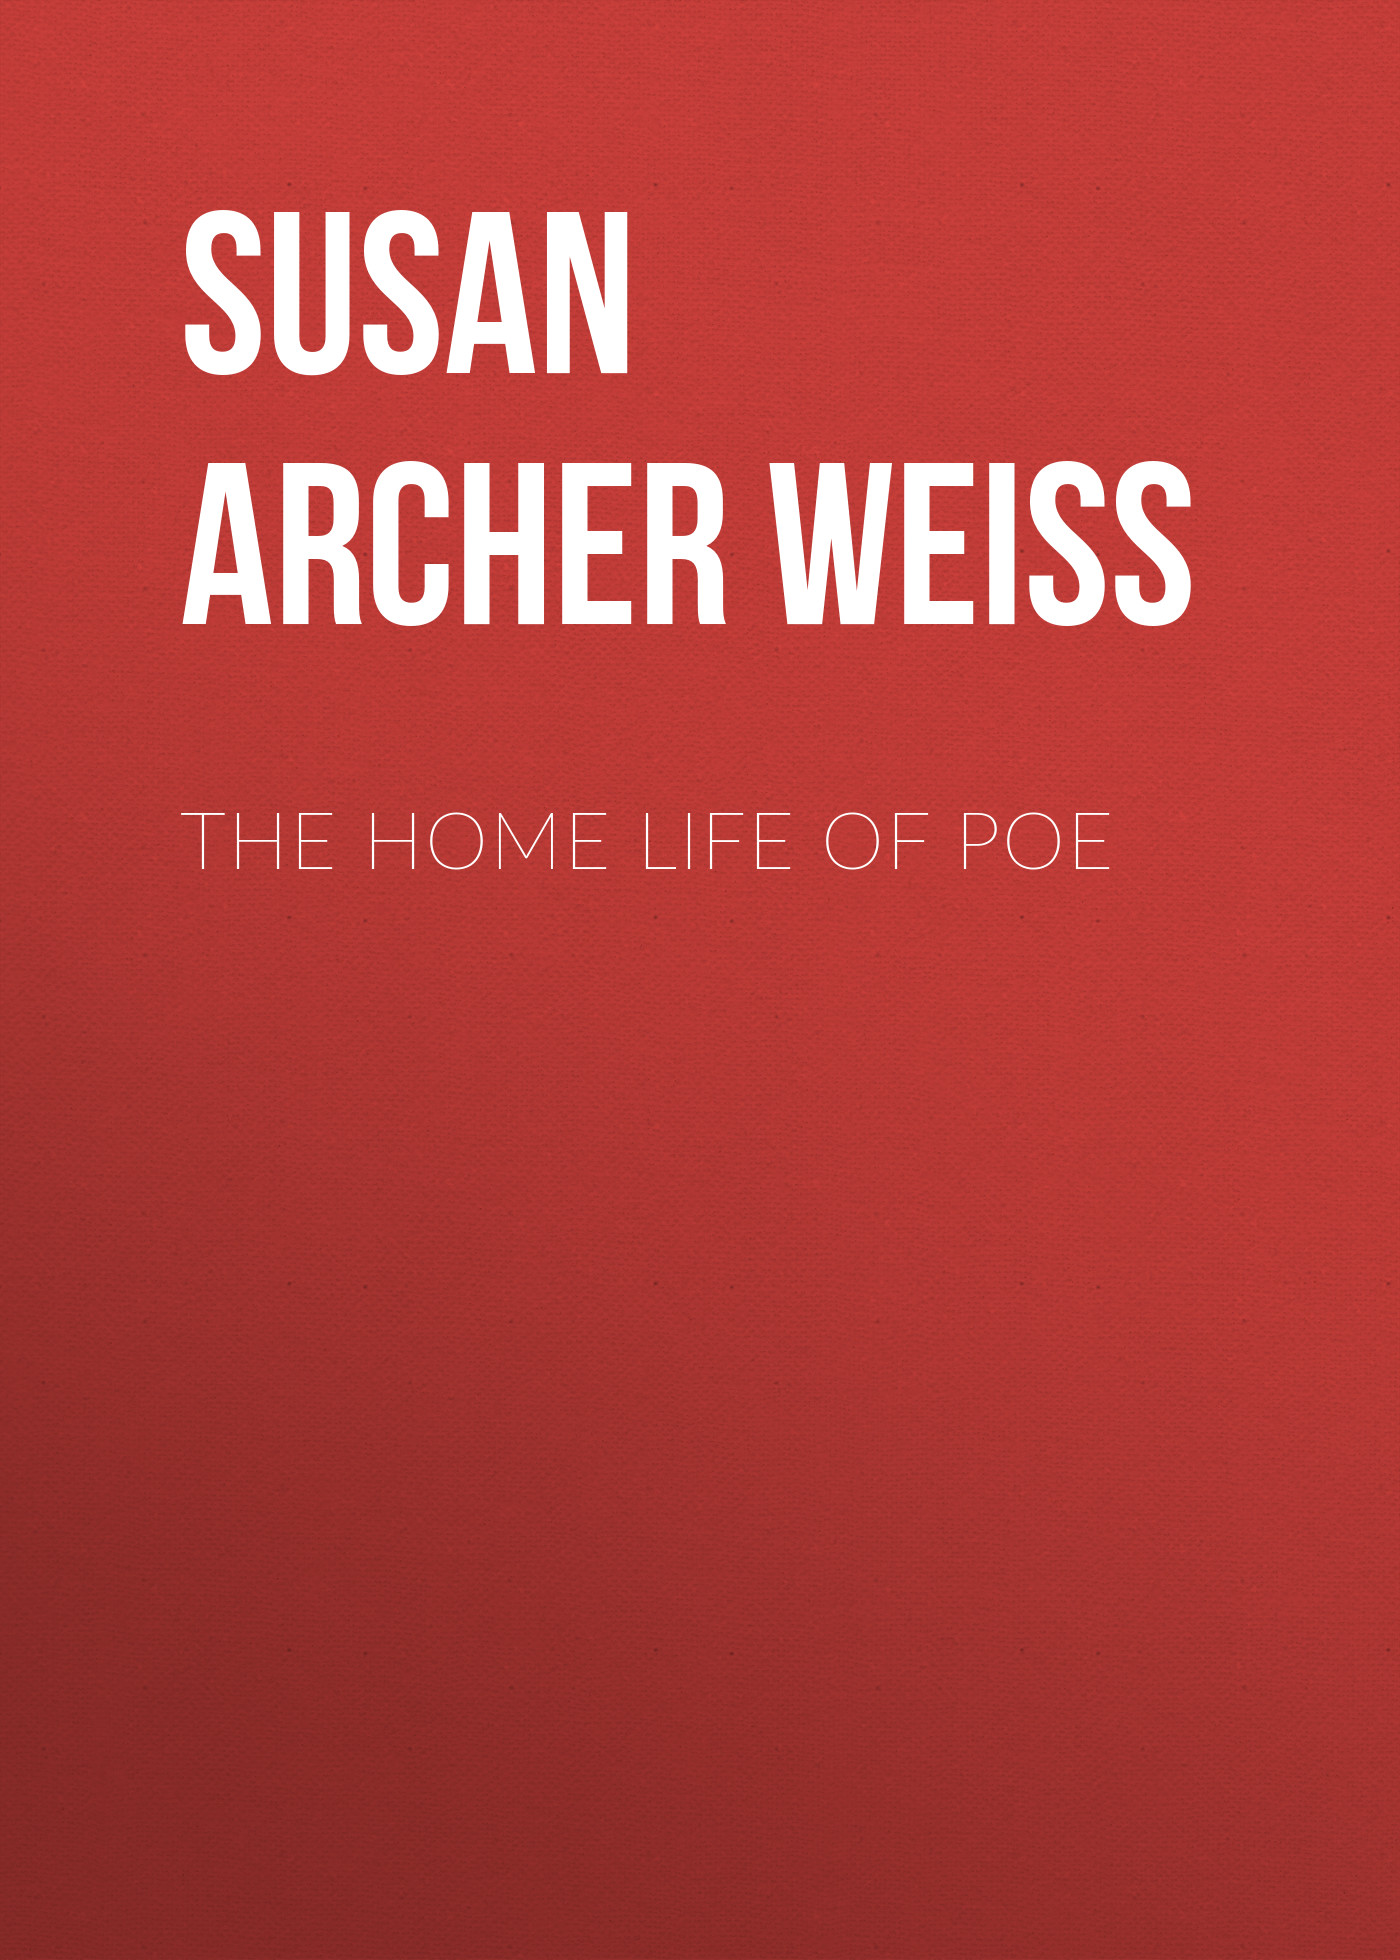 Книга The Home Life of Poe из серии , созданная Susan Archer Talley Weiss, может относится к жанру Биографии и Мемуары, Зарубежная старинная литература. Стоимость электронной книги The Home Life of Poe с идентификатором 34337514 составляет 0 руб.